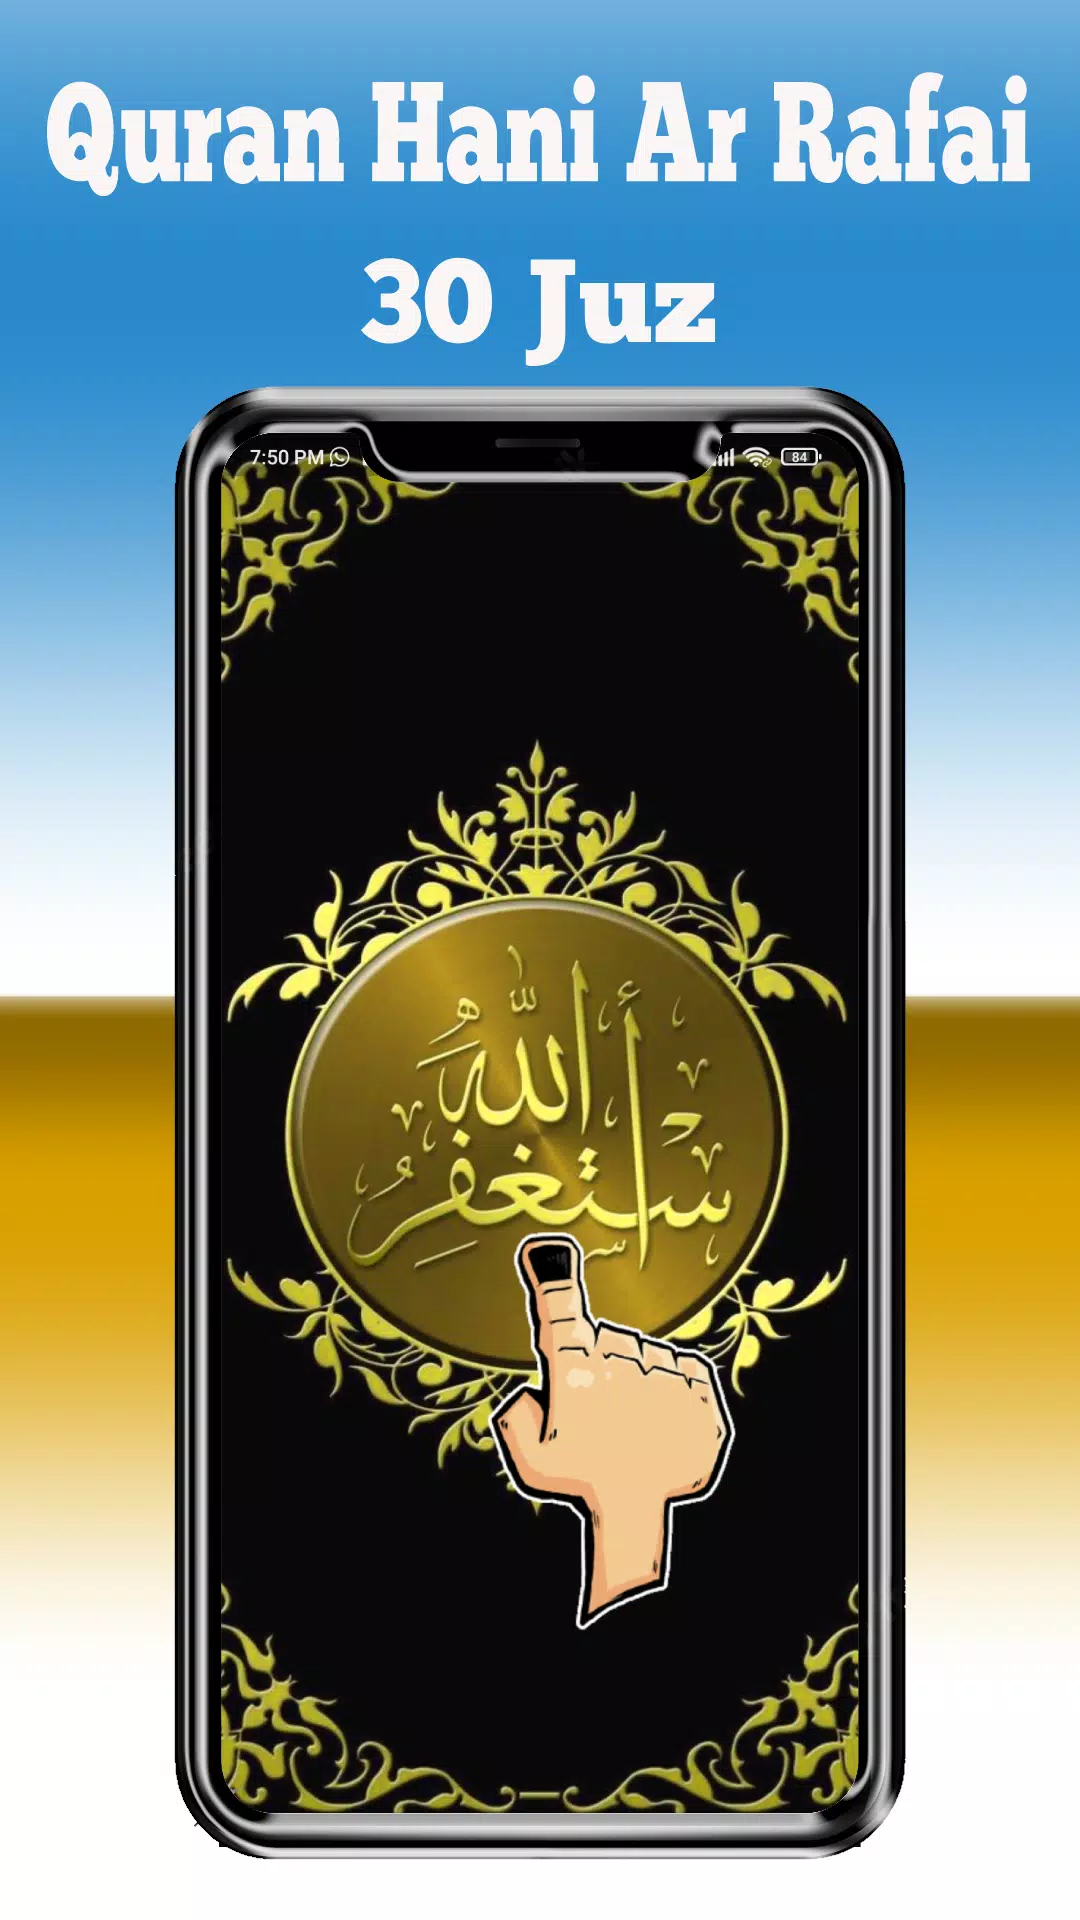 Al Quran by Hani Ar Rifai Mp3 APK pour Android Télécharger